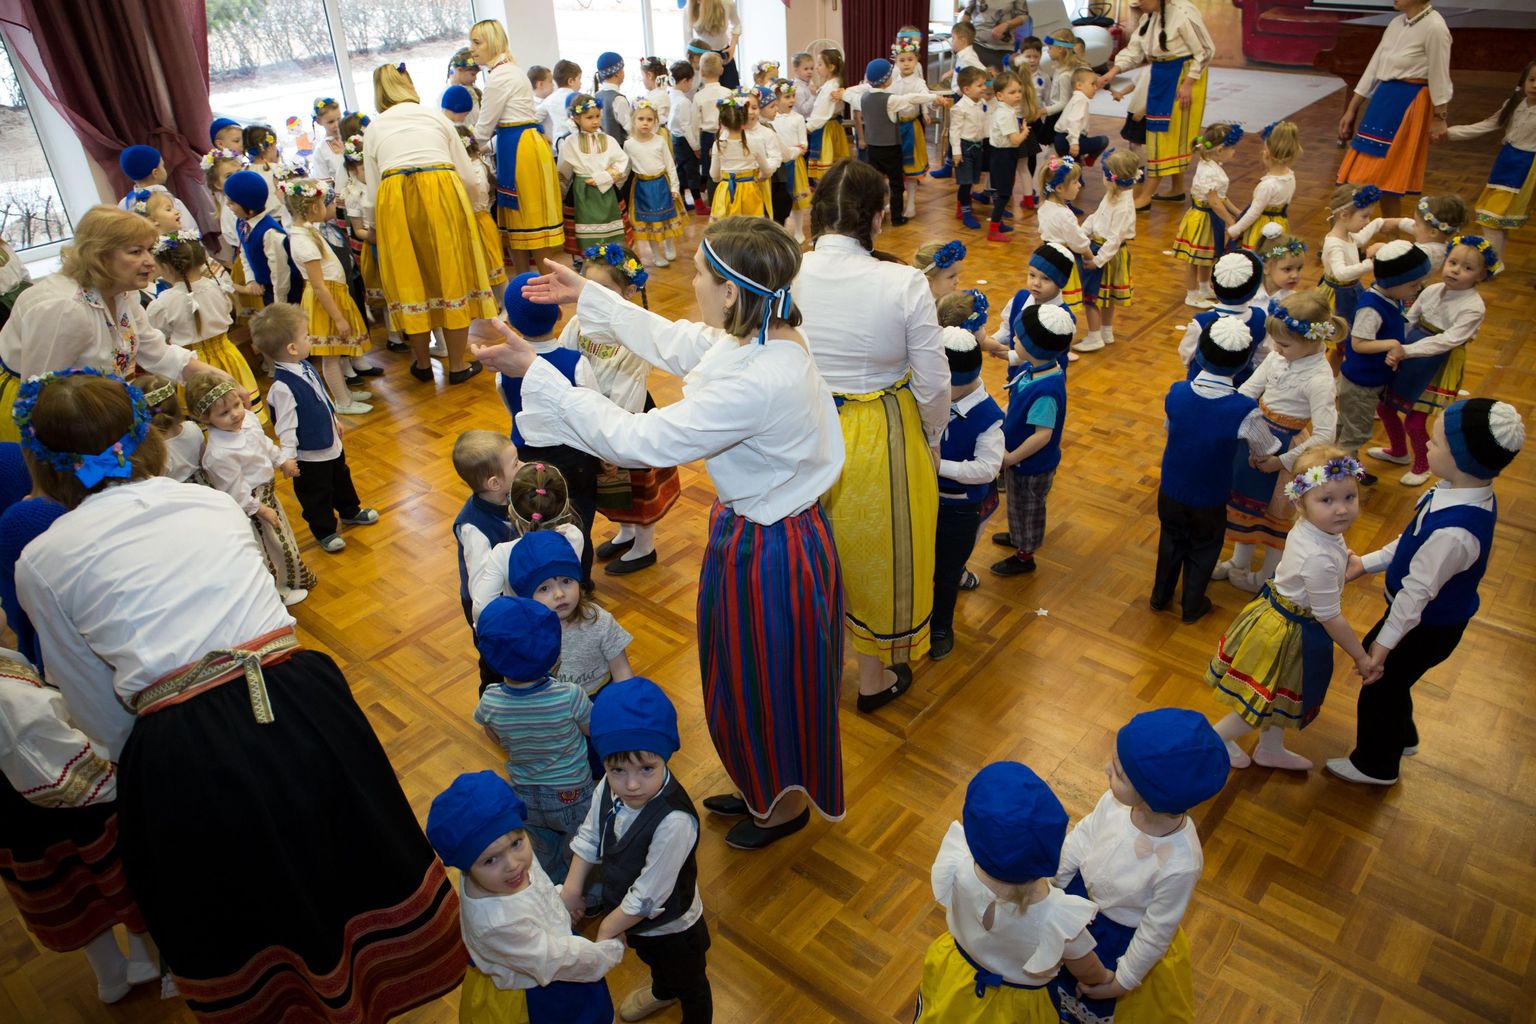 Kõik 260 last Tallinna Liikuri lasteaia saali korraga tantsima-laulma ei mahu – seepärast anti lausa kaks eraldi tantsijate-lauljatega kontserti.